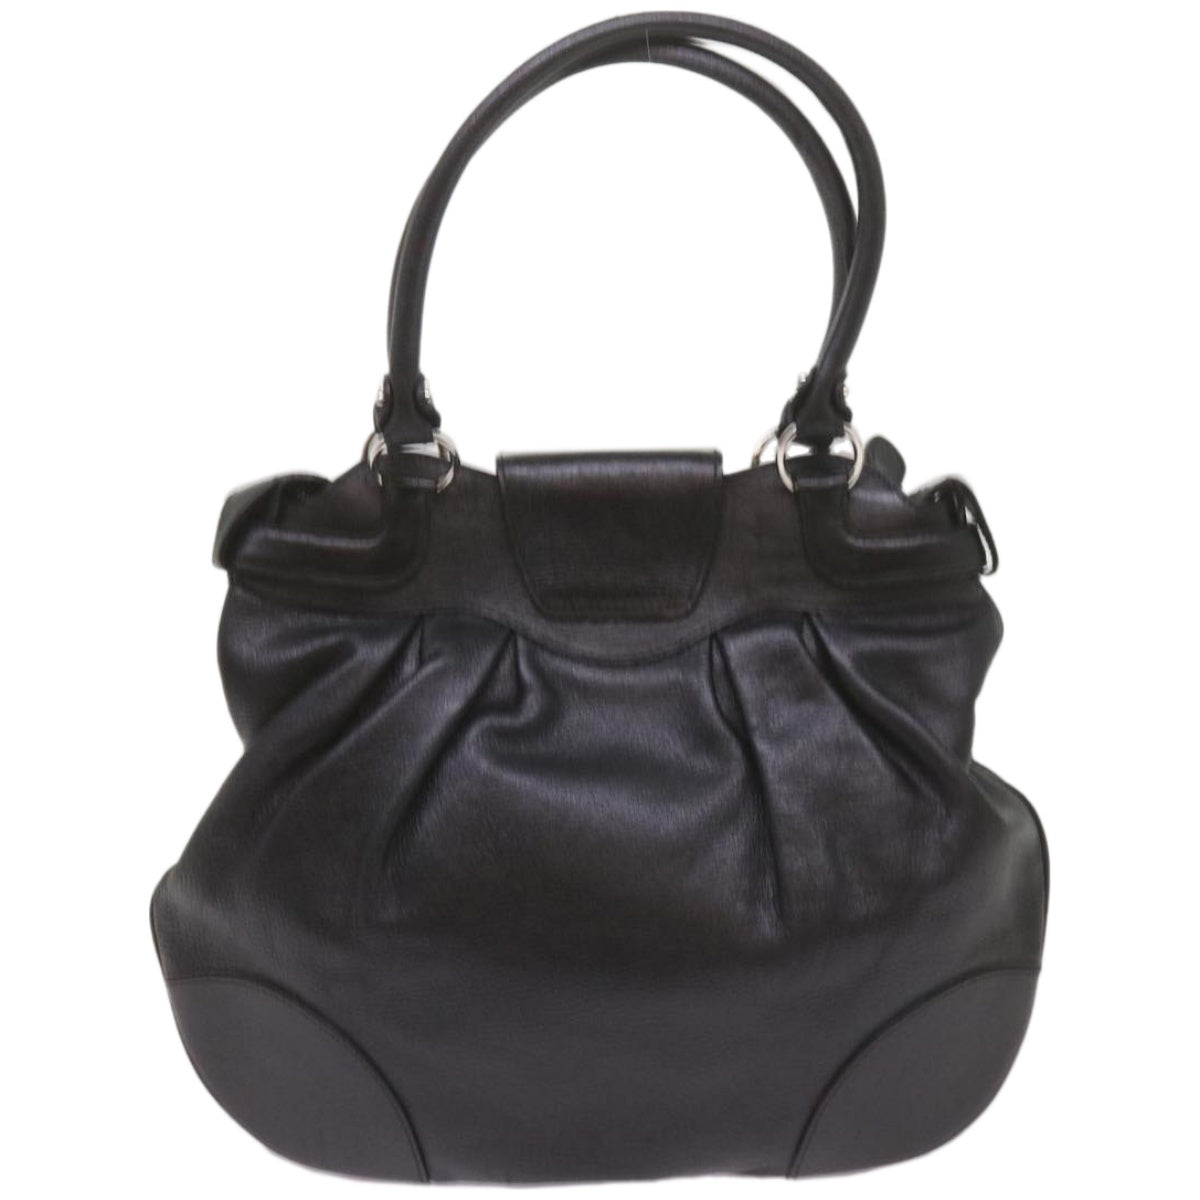 Salvatore Ferragamo Gancini Hand Bag Leather Black Auth 68138 - 0